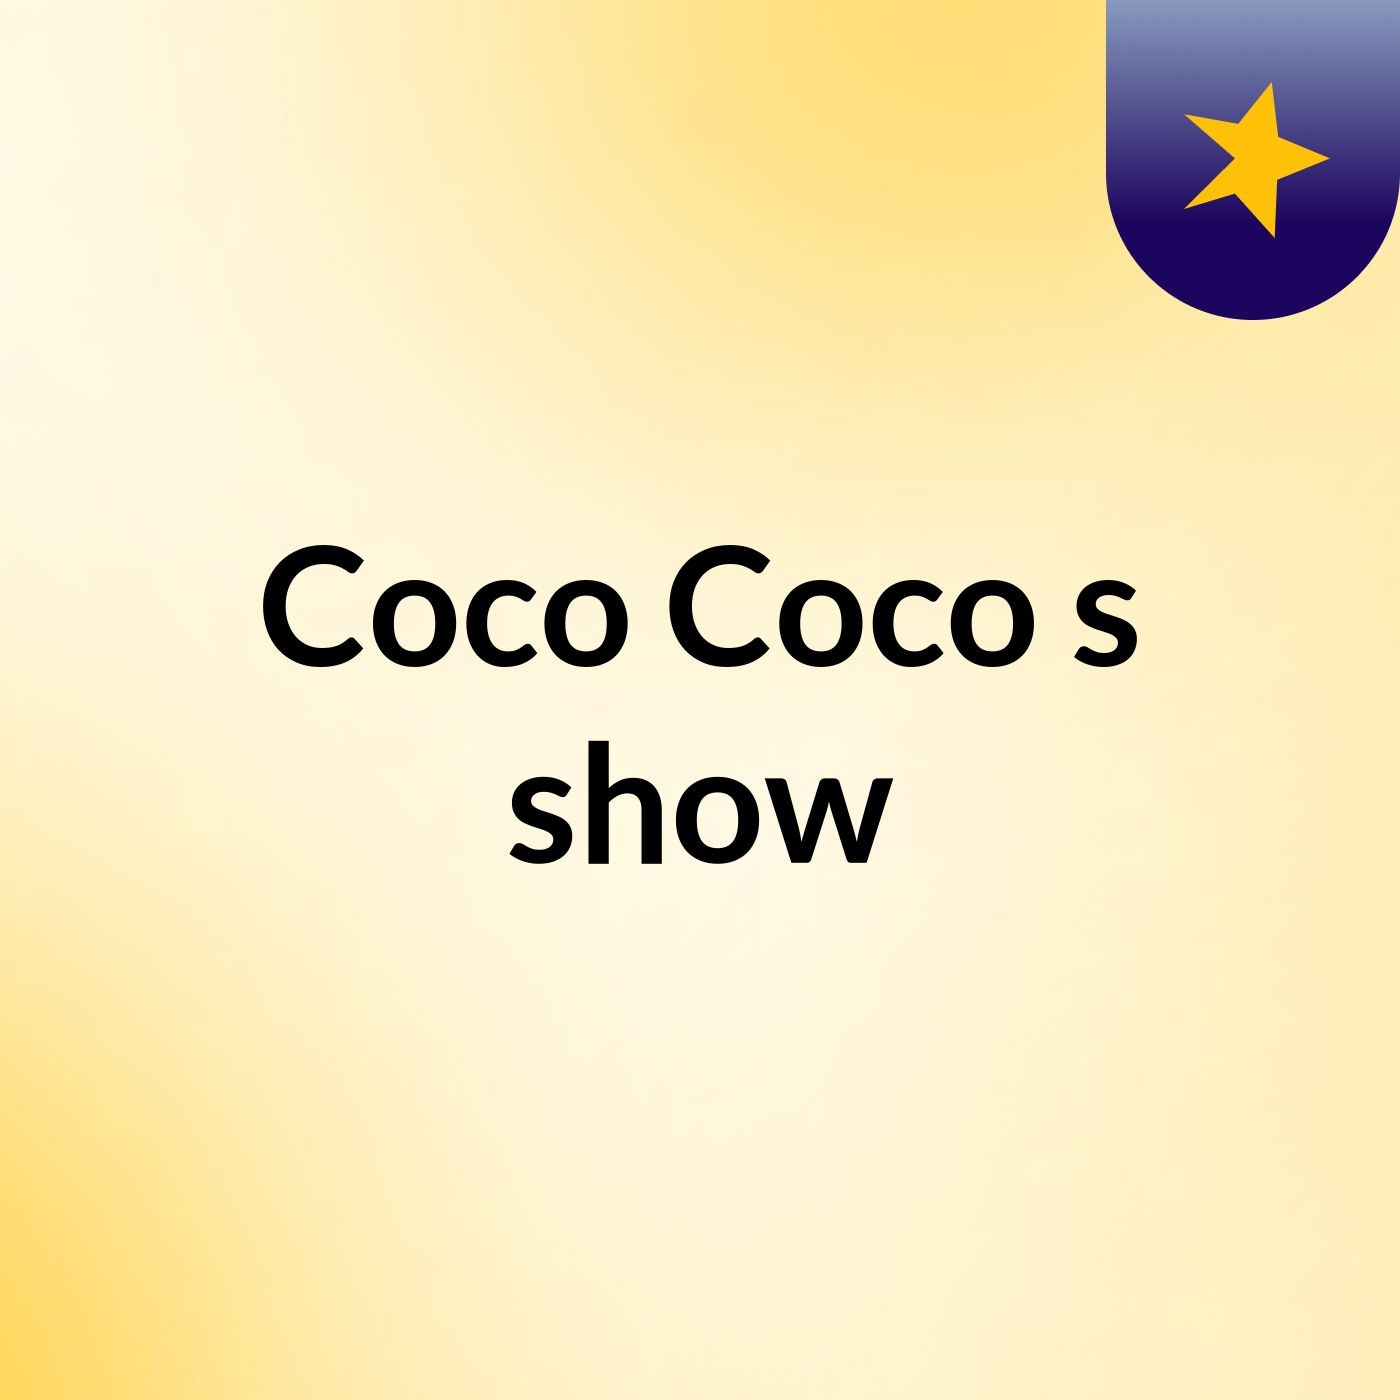 Coco Coco's show